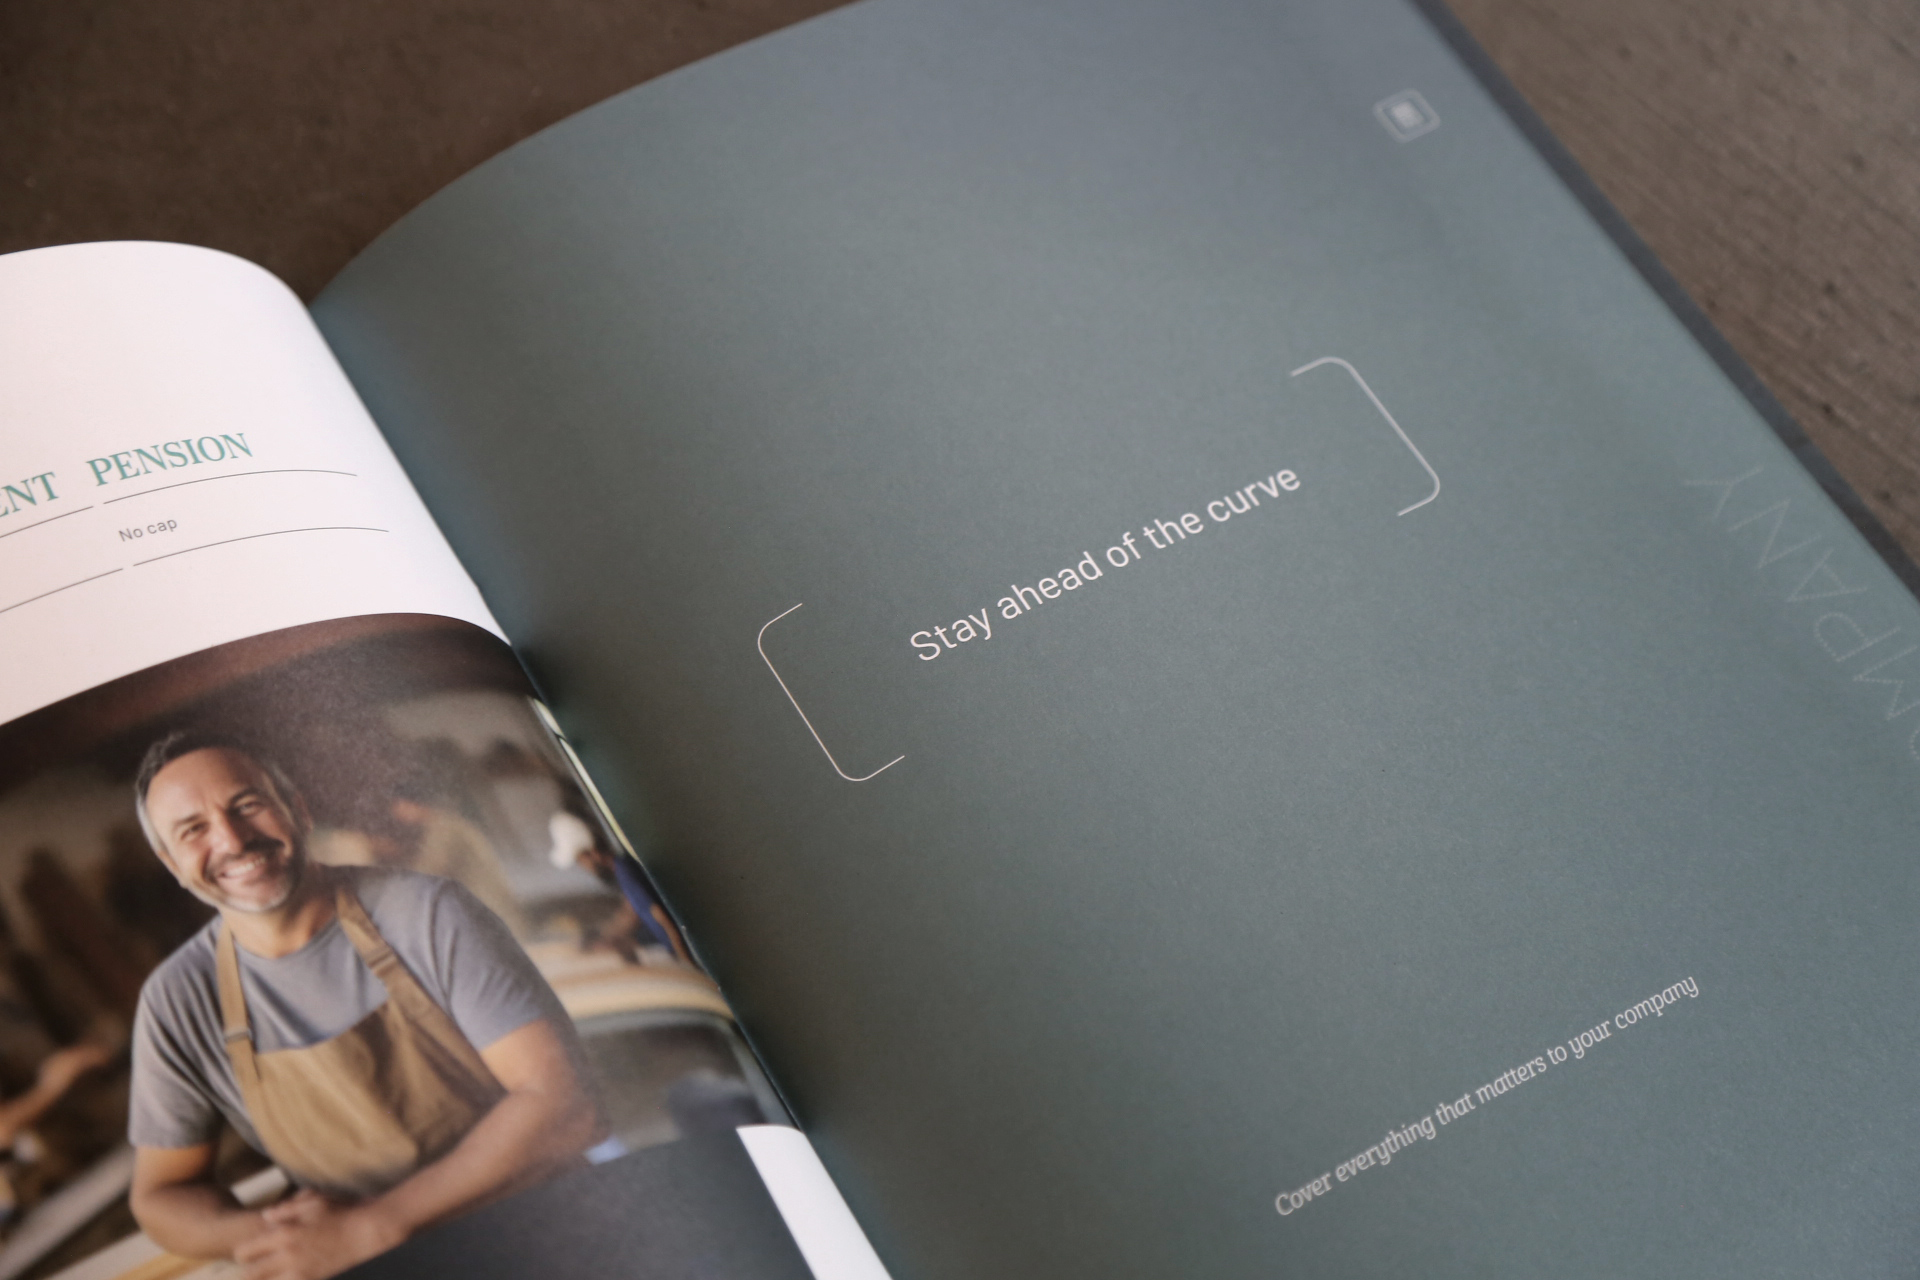 Page intérieure d'une brochure de Foyer avec un texte 'Stay ahead of the curve' en blanc sur fond gris foncé, et une photo d'un homme souriant en tablier de travail, symbolisant l'engagement envers le bien-être des employés.